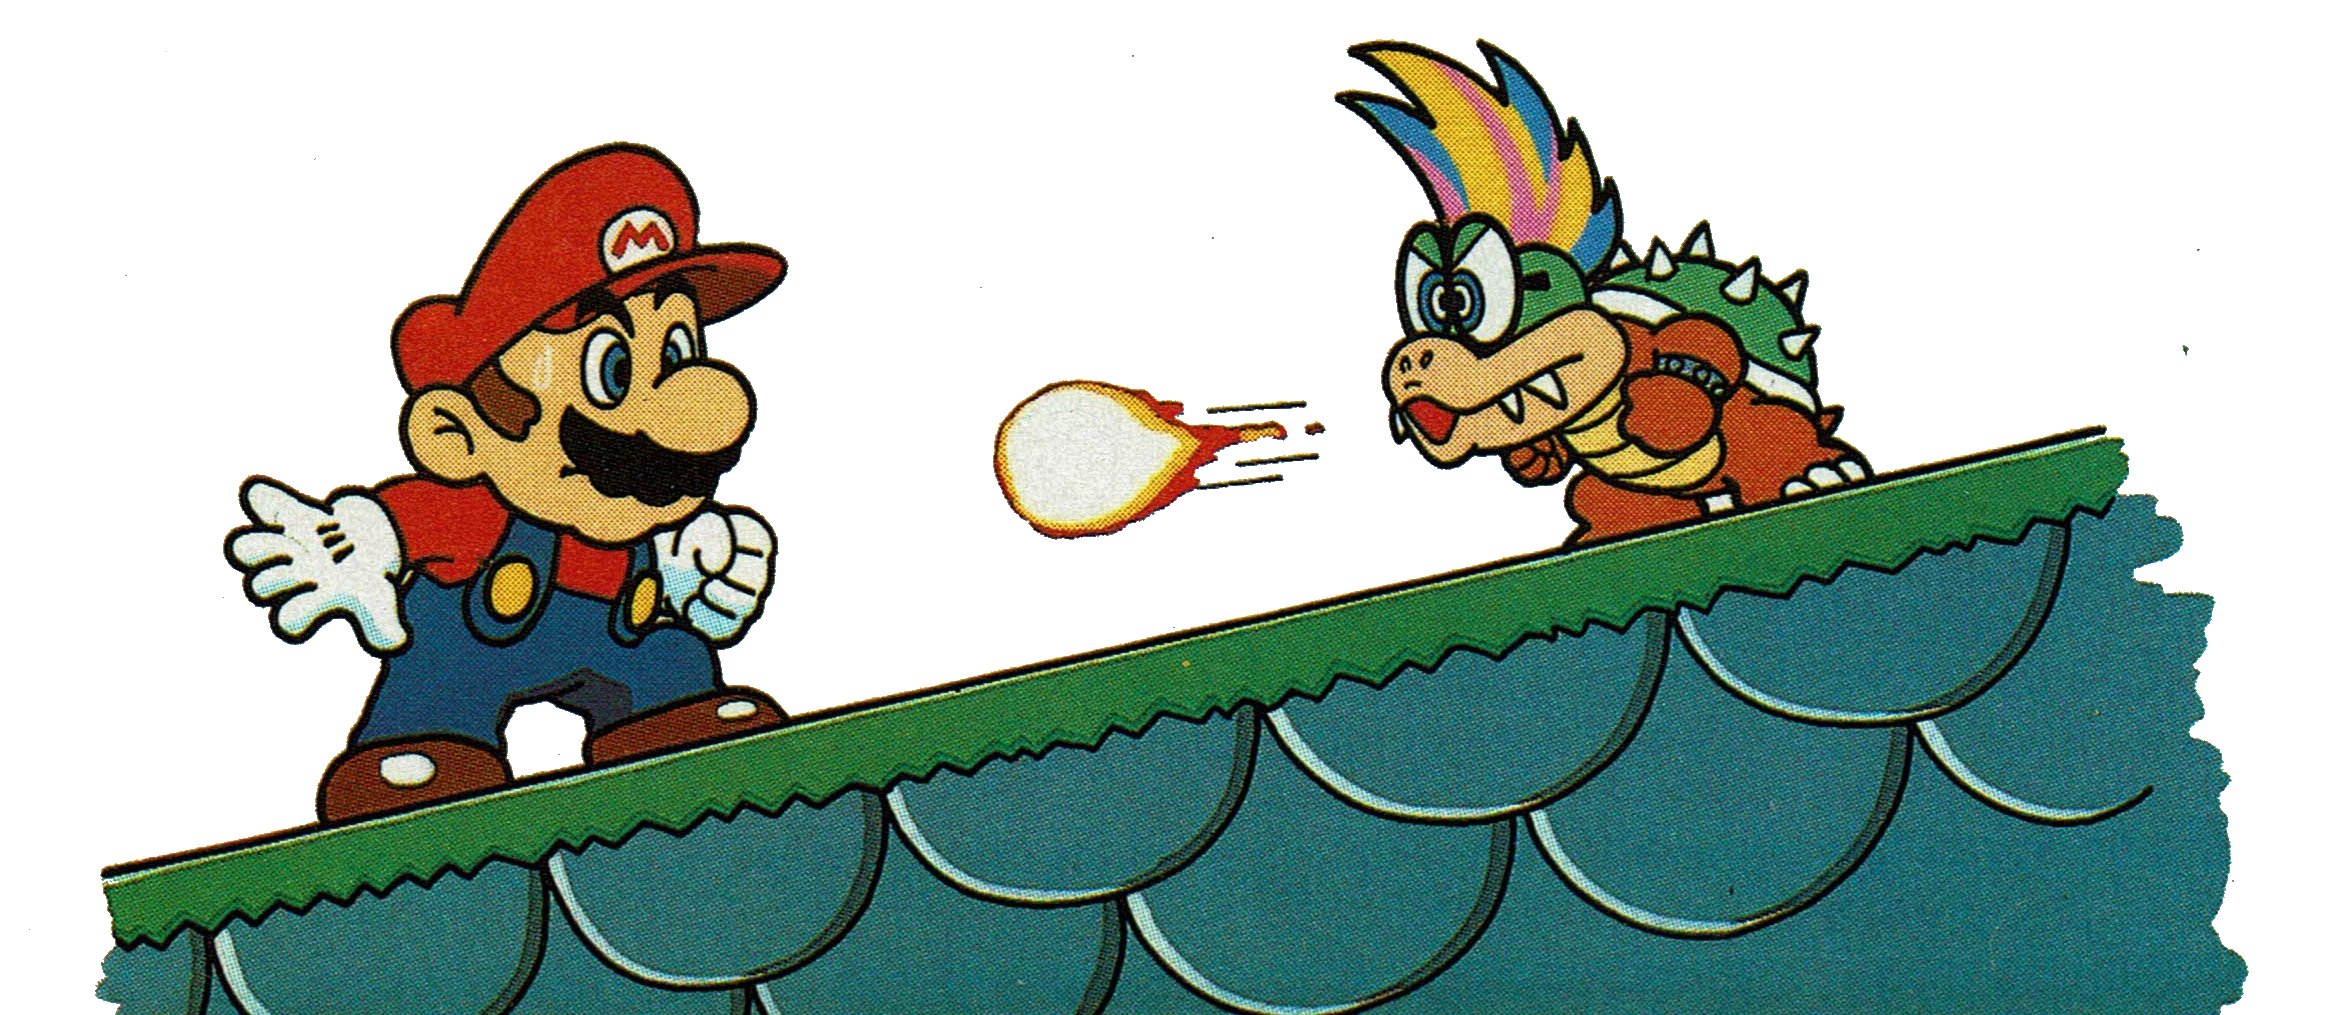 Download Electric Crayon 3.1: Super Mario Bros & Friends: When I